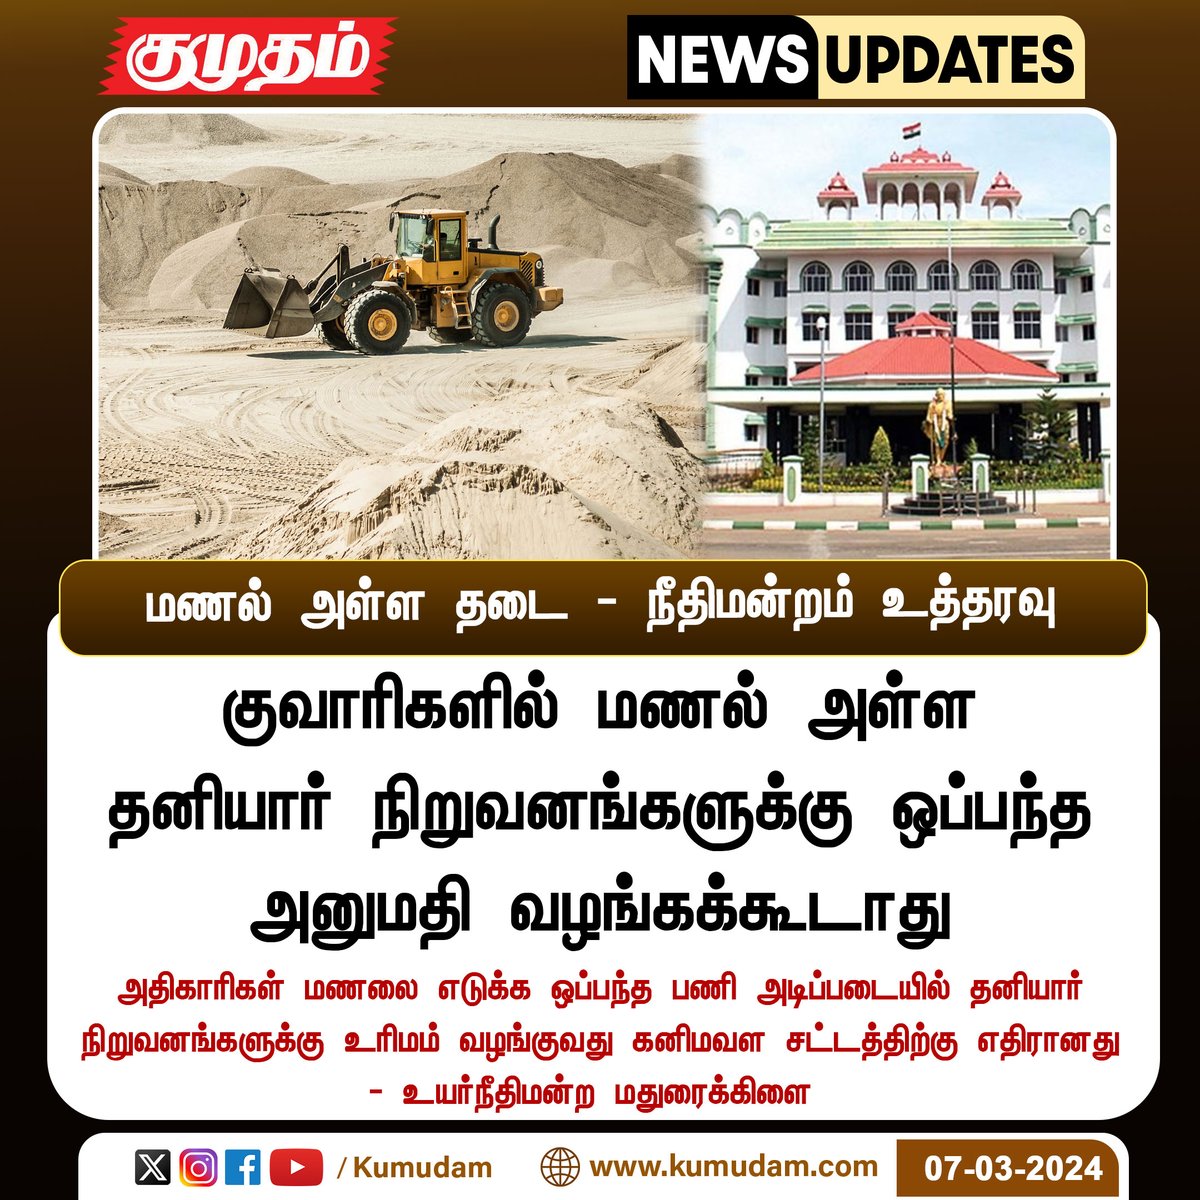 மணல் அள்ள தடை - நீதிமன்றம் உத்தரவு

#MaduraiHighCourt | #Sandquarry | #TNsand | #Ban | #PrivateCompanies